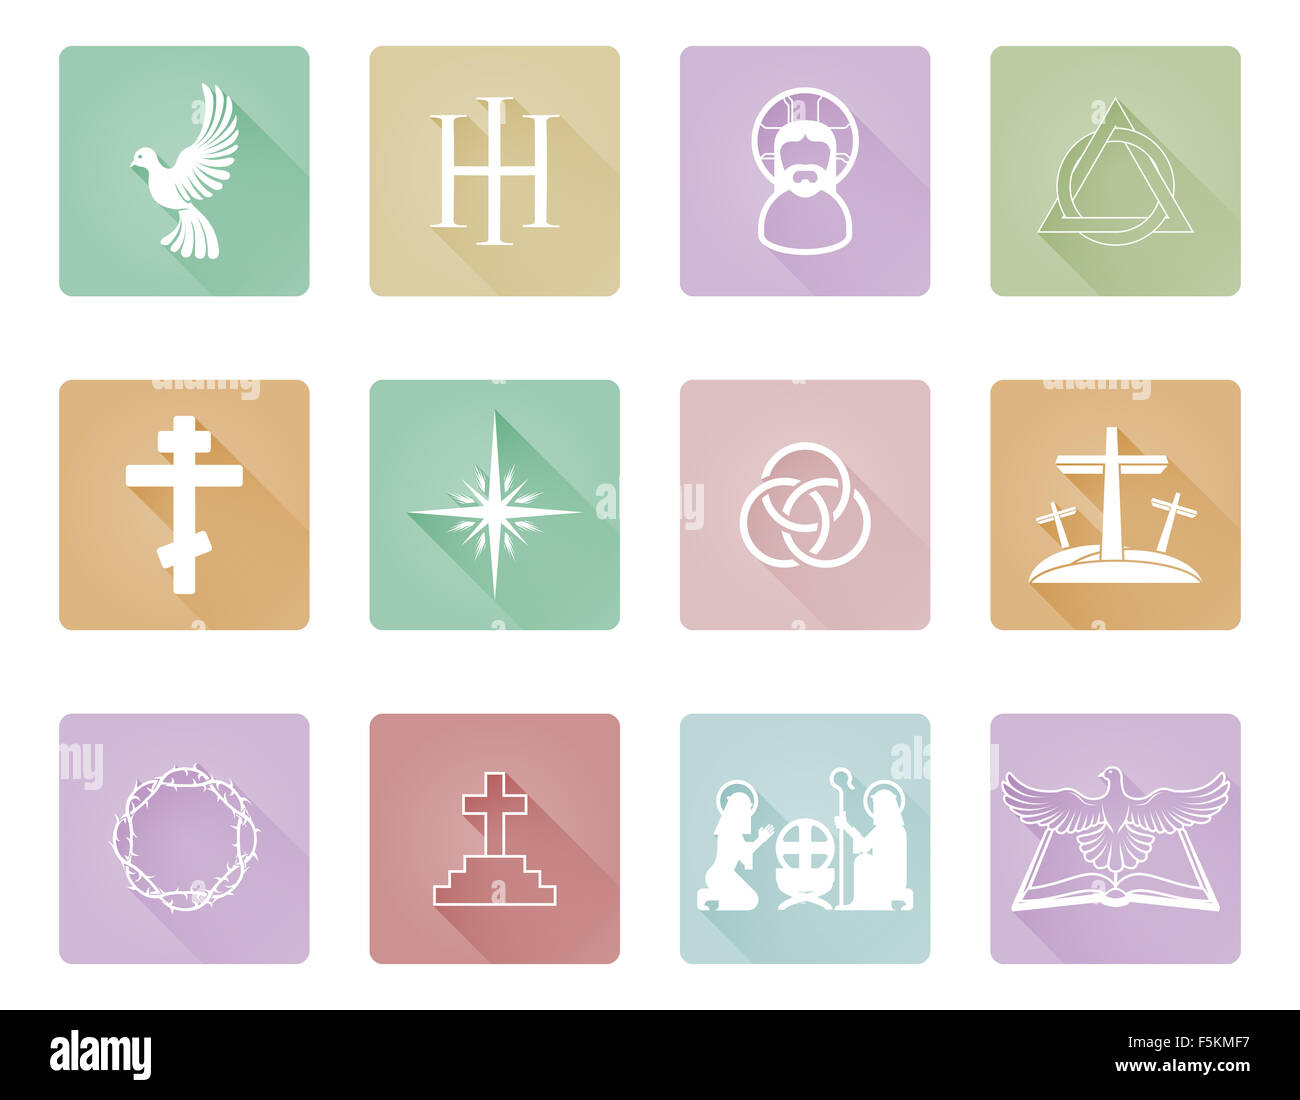 Un ensemble d'icônes et symboles chrétiens comme la colombe, croix et symboles de la trinité Banque D'Images